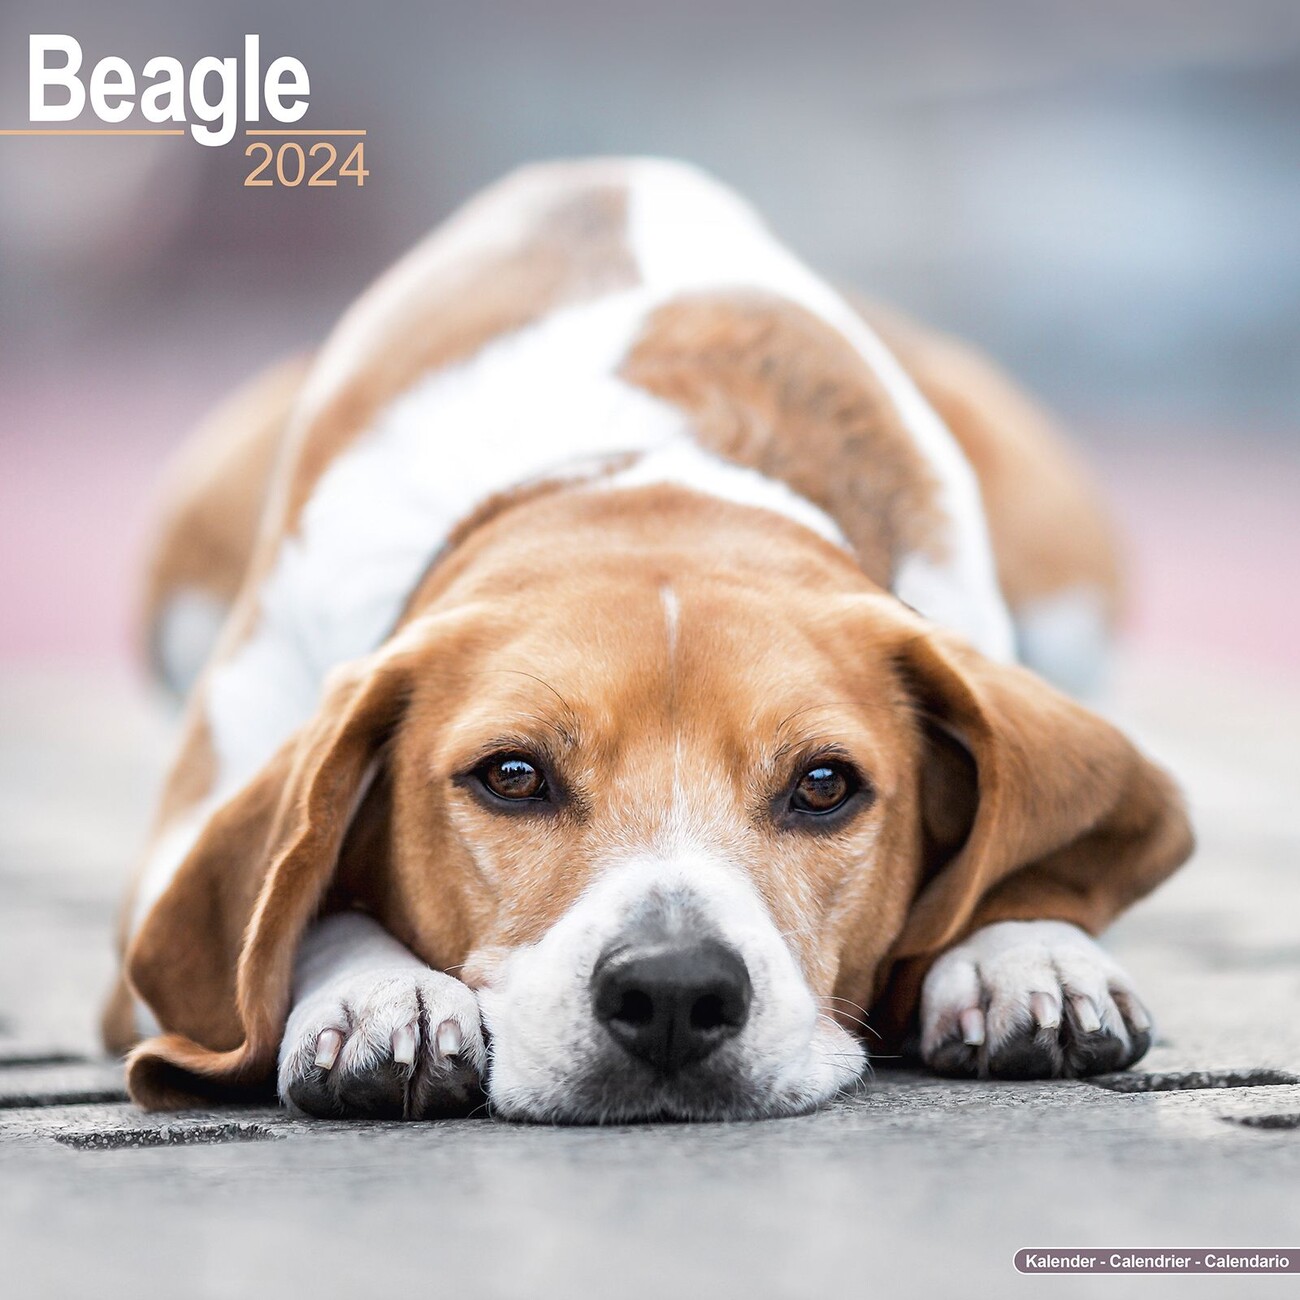 Caletines para hombre, originales, perro beagle